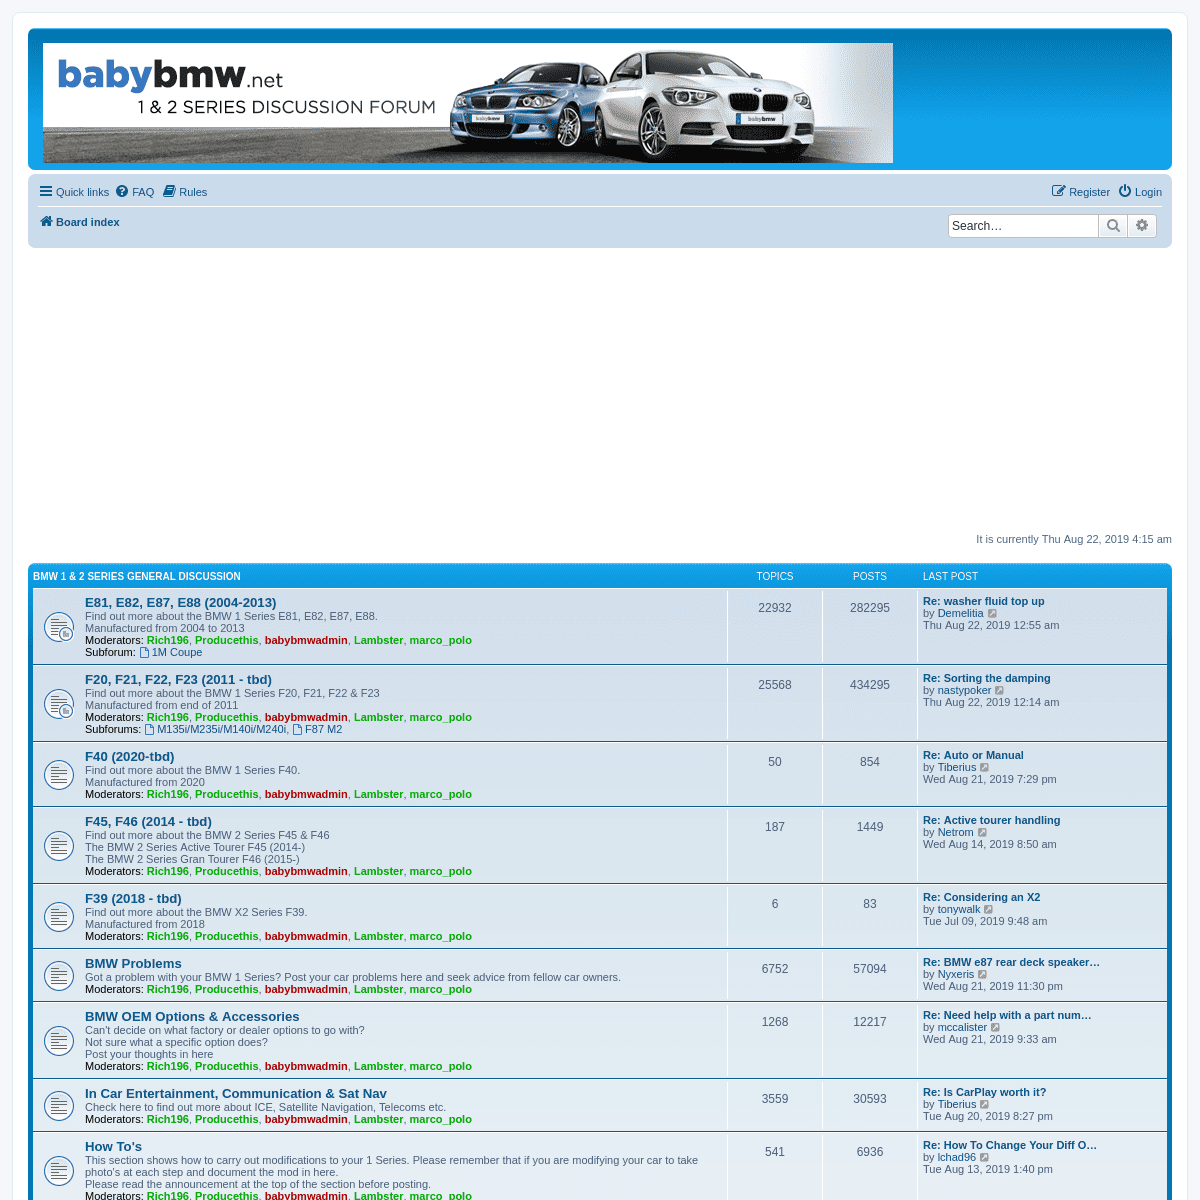 babybmw.net - Index page